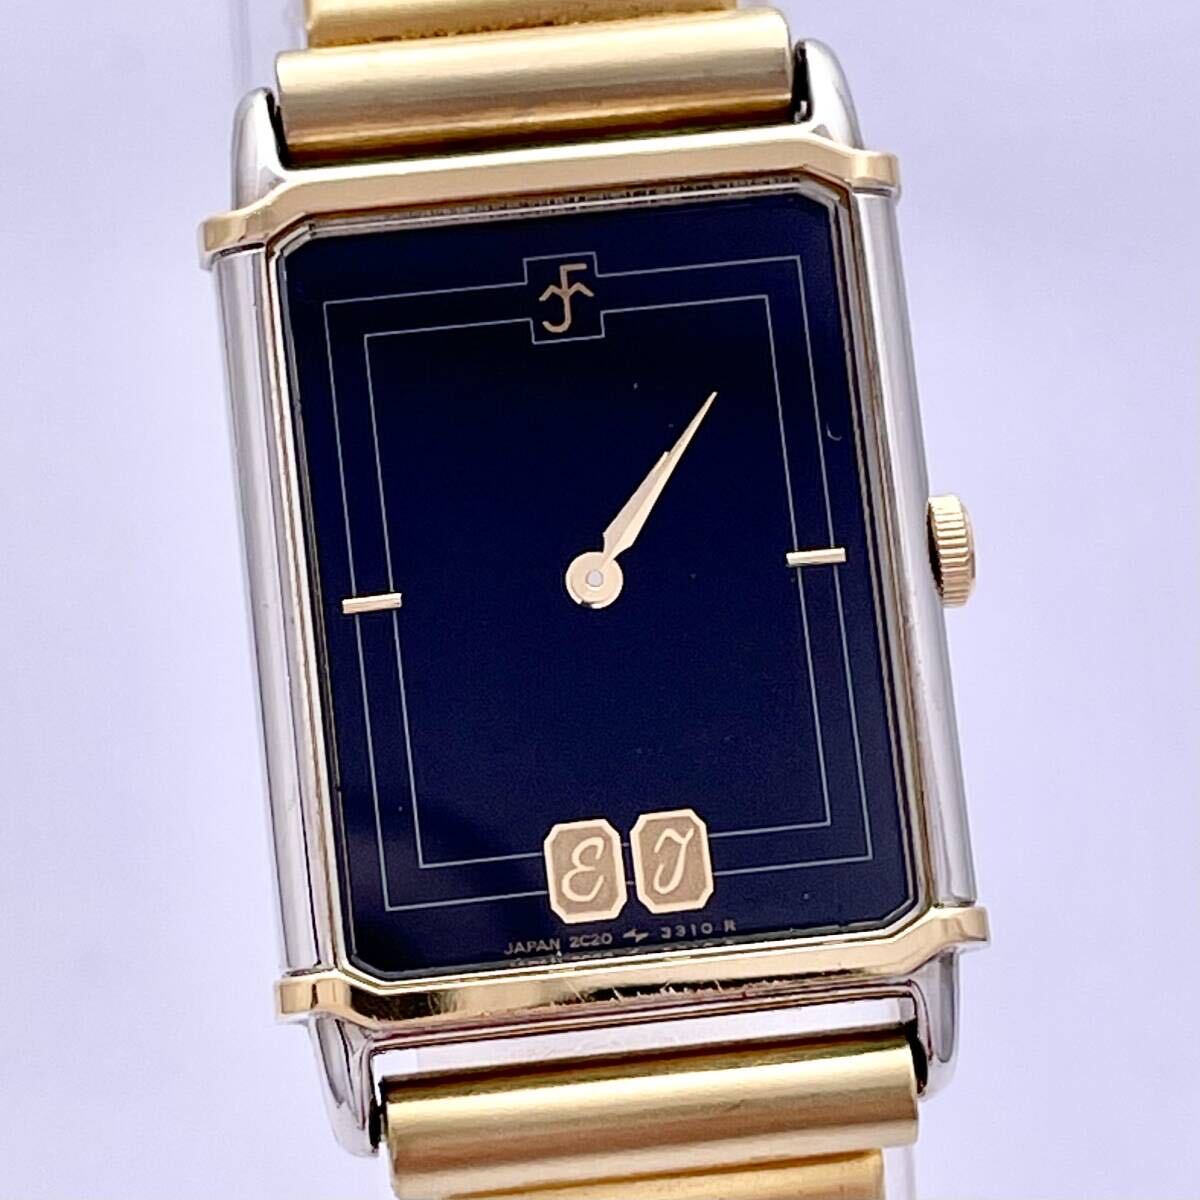 SEIKO セイコー 2C20-5910 べっ甲風 腕時計 ウォッチ クォーツ quartz 金 ゴールド 銀 シルバー P352_画像4